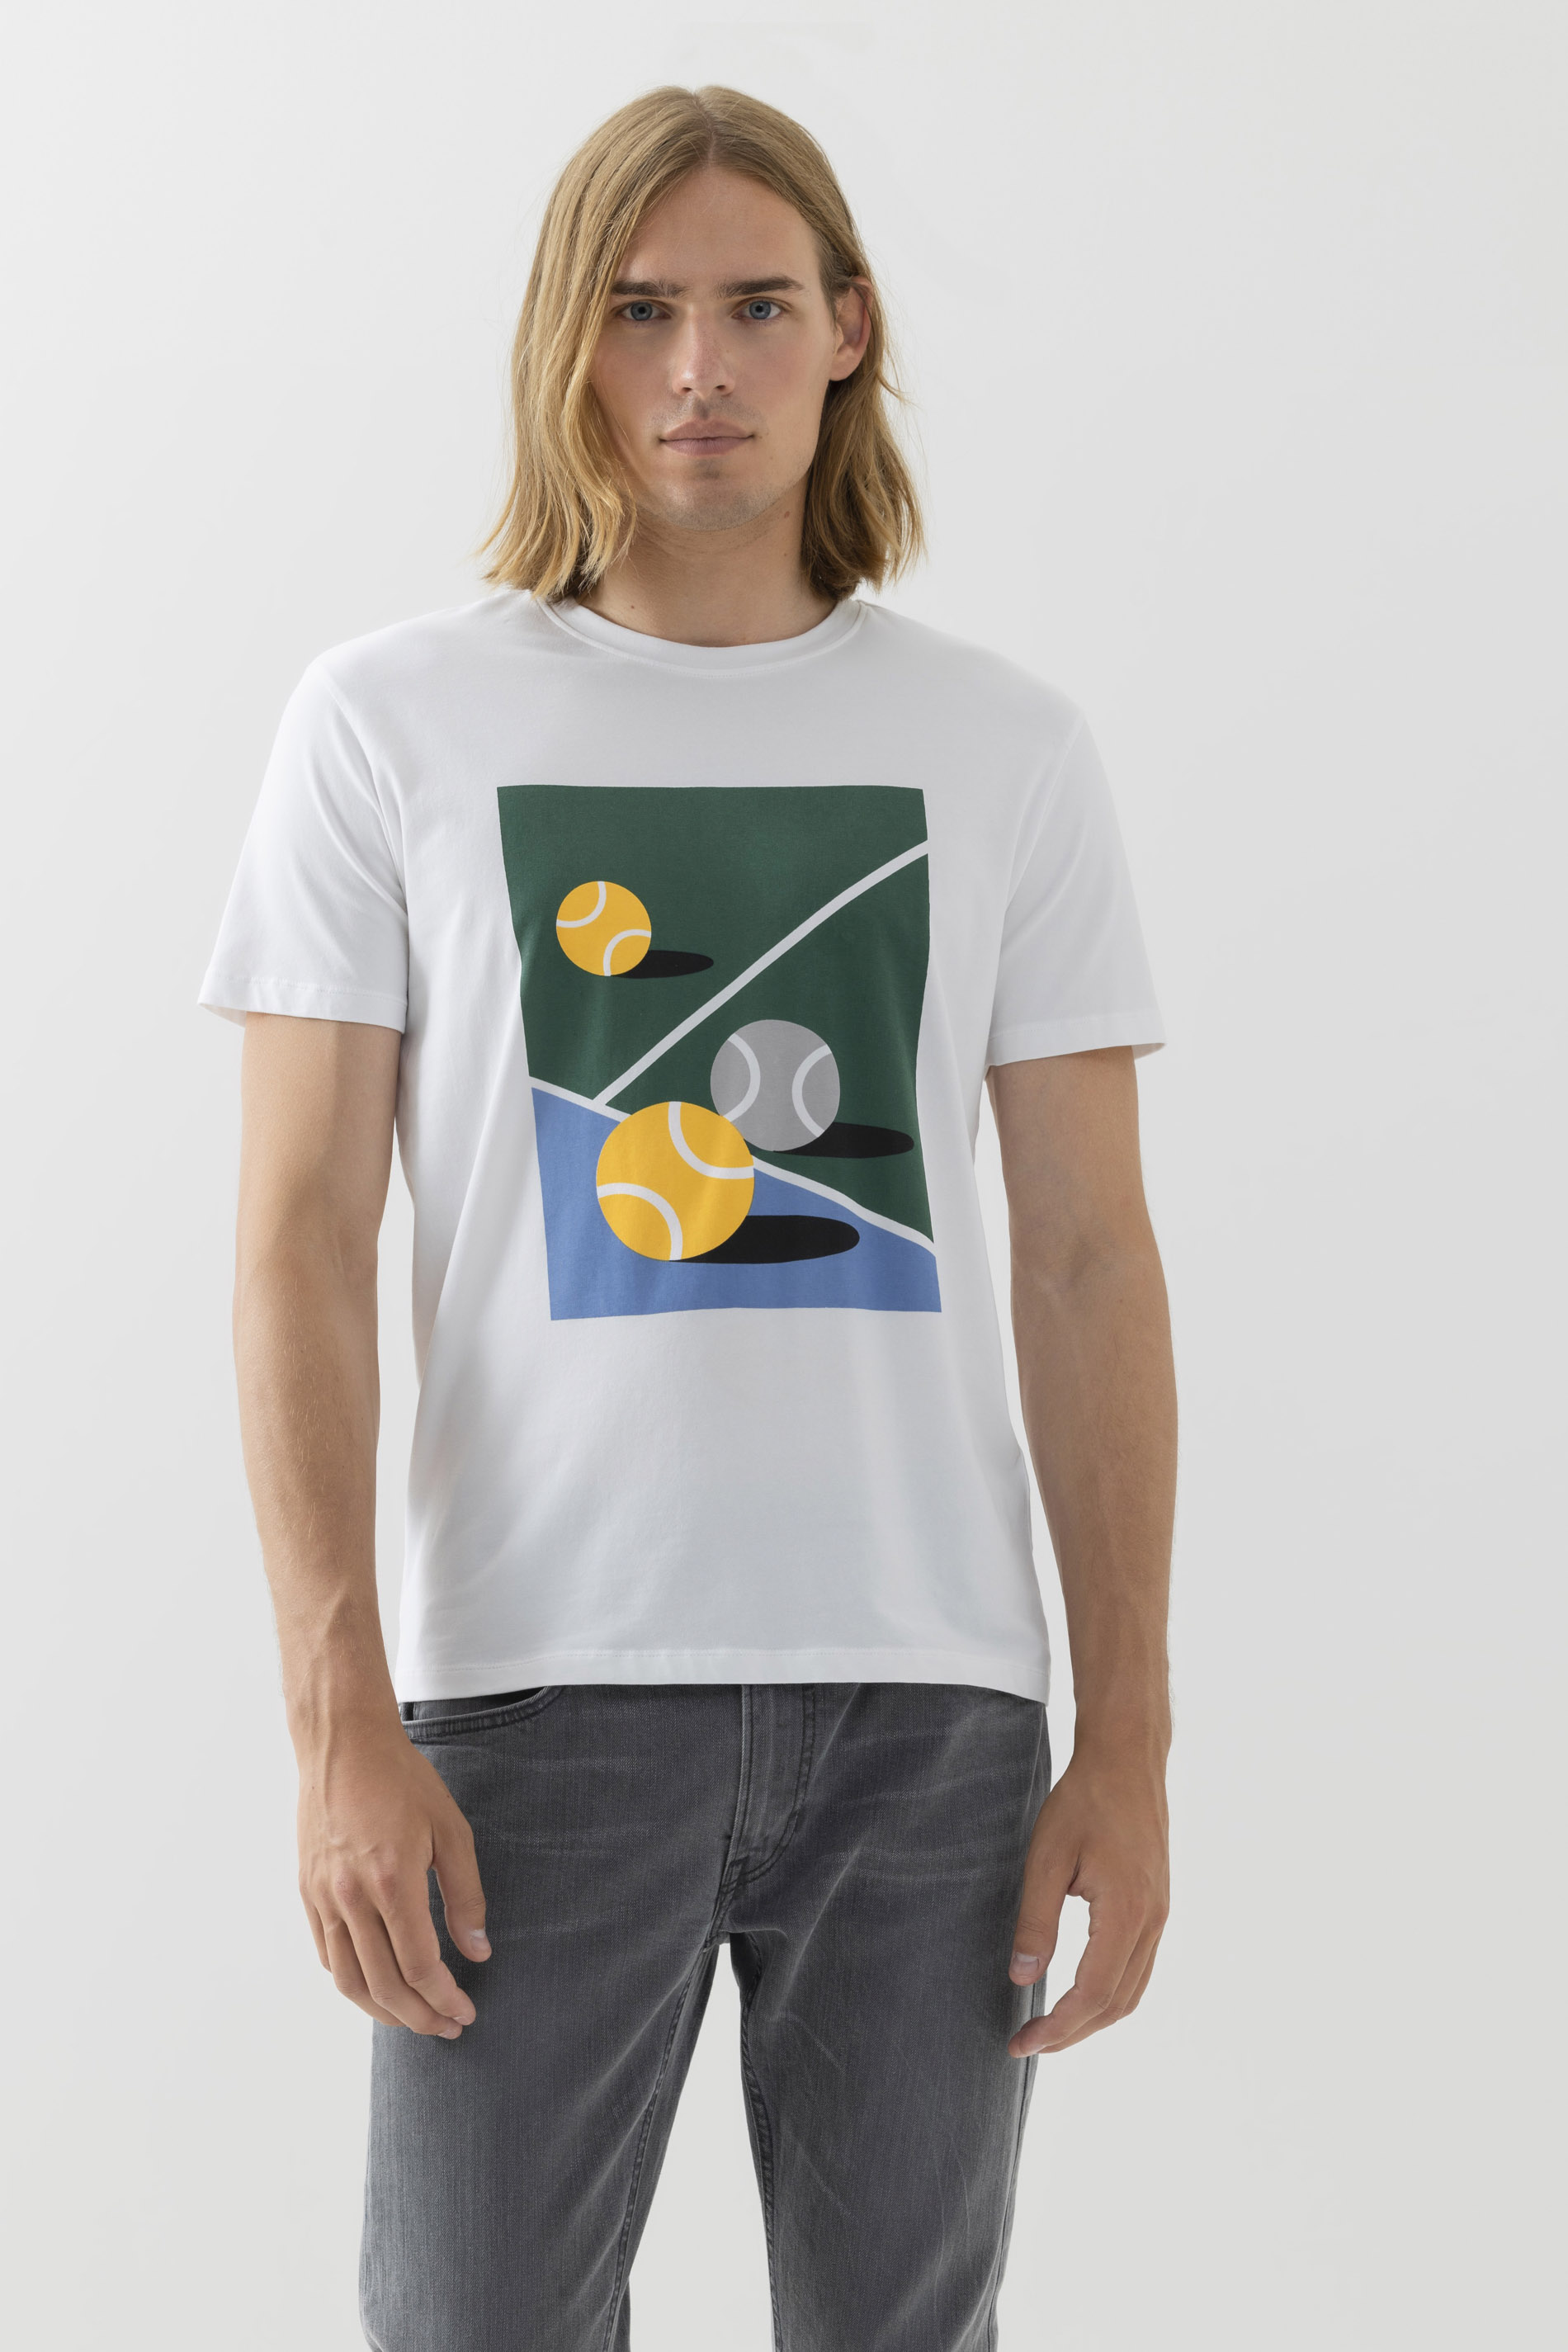 T-Shirt Serie Tennis Frontansicht | mey®